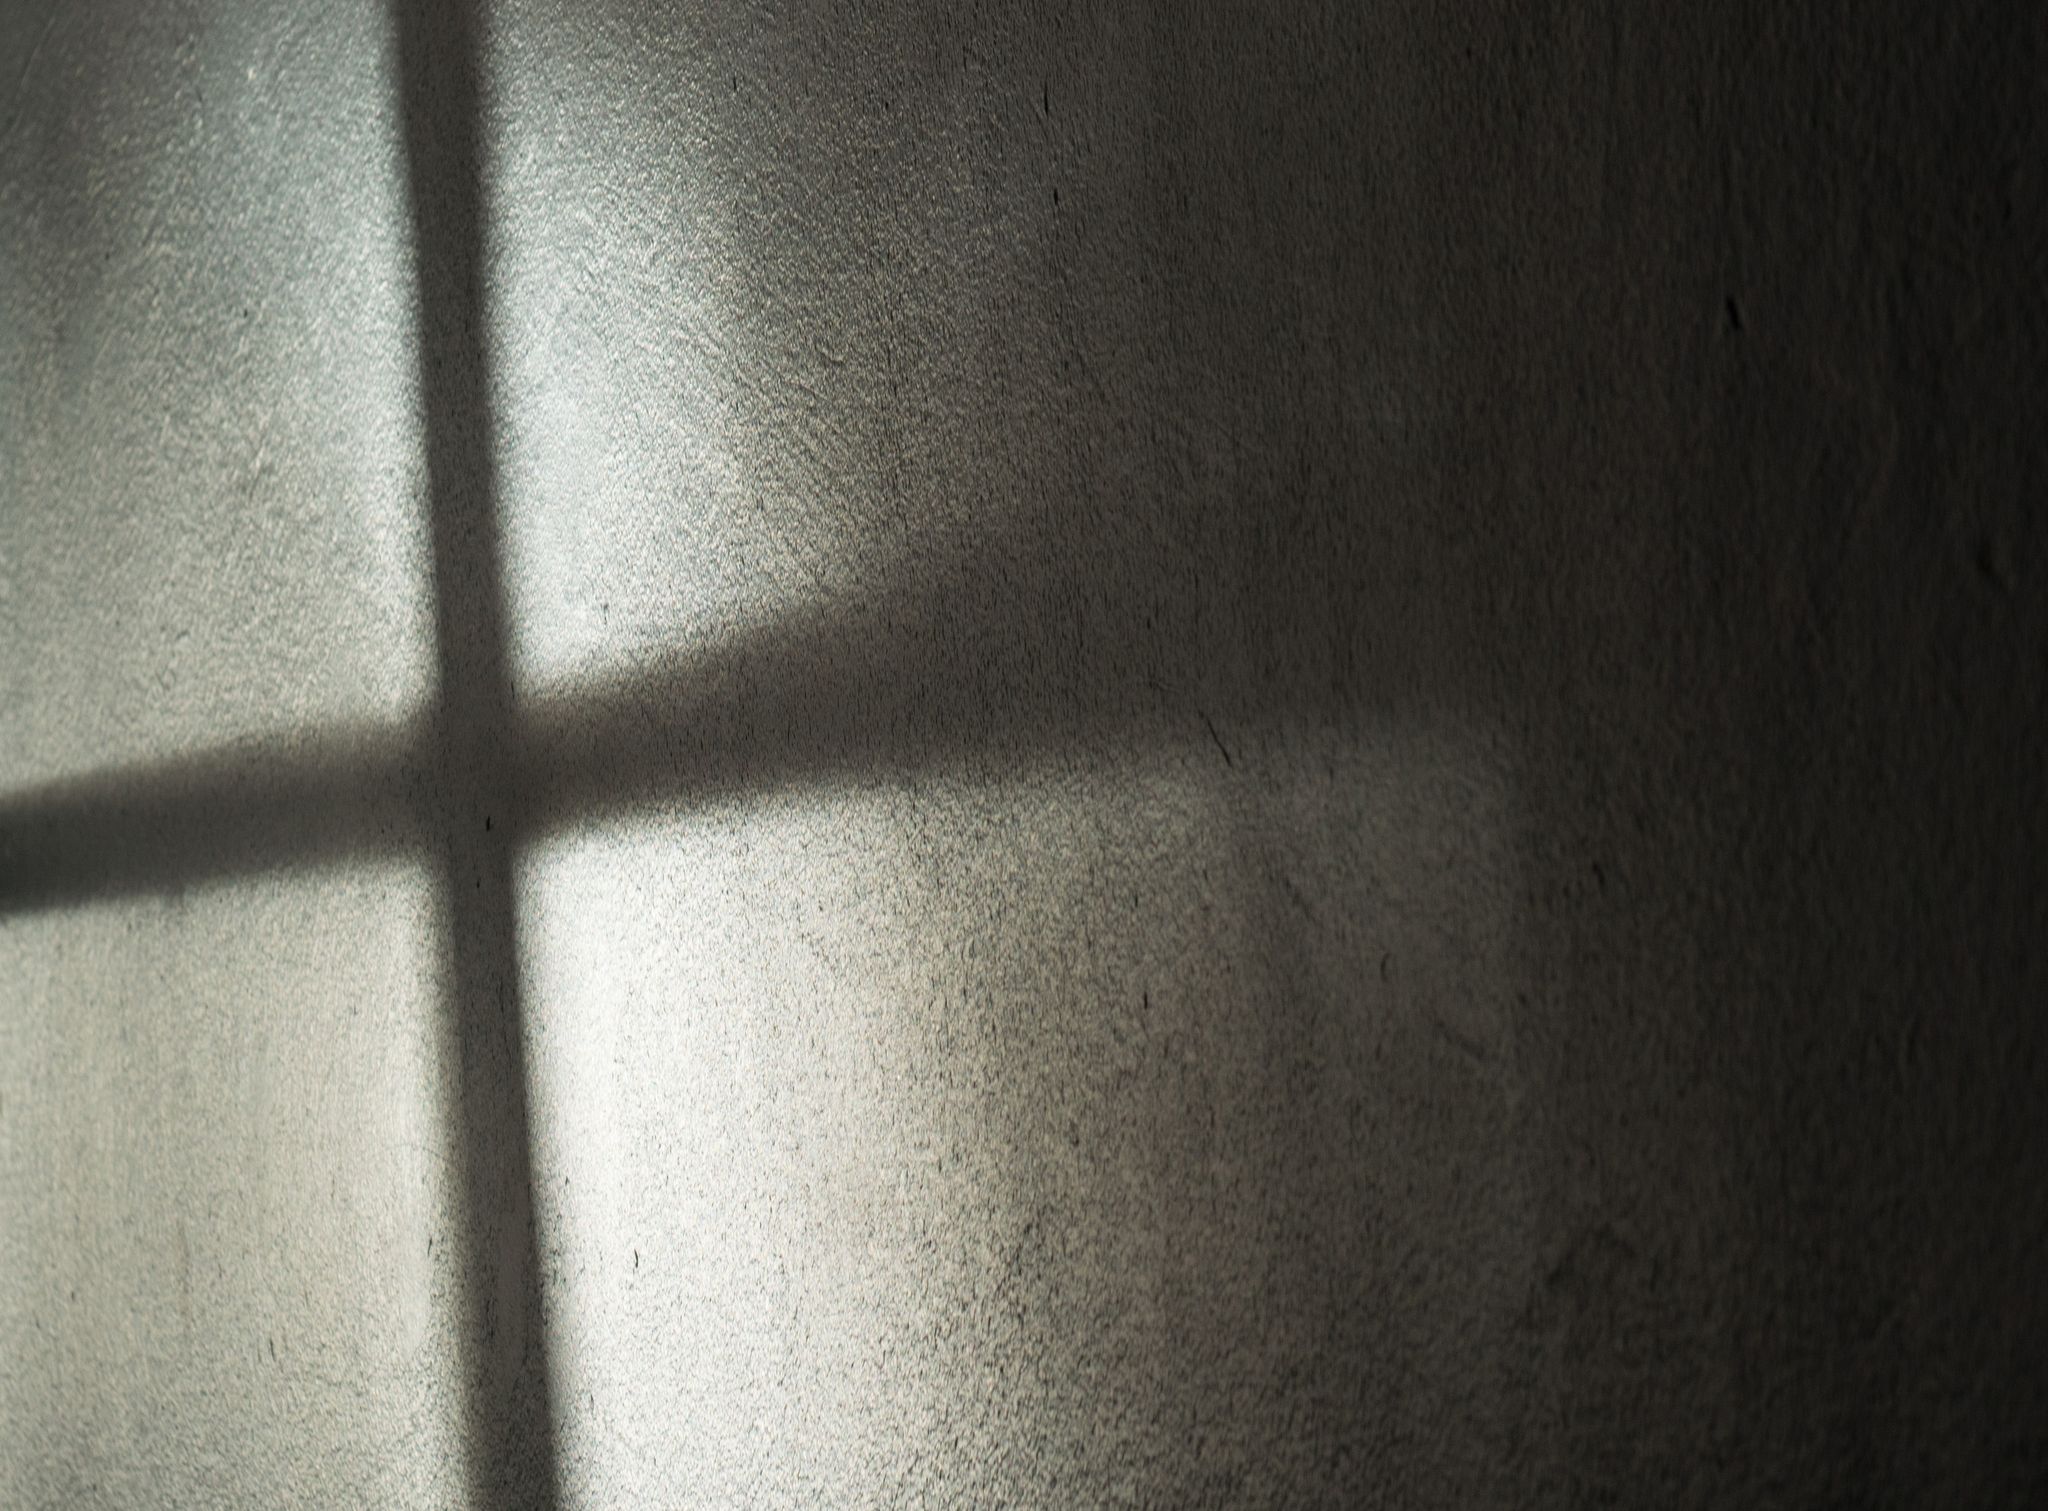 Katholische Kirche in Illinois: Fast 2000 Kinder missbraucht